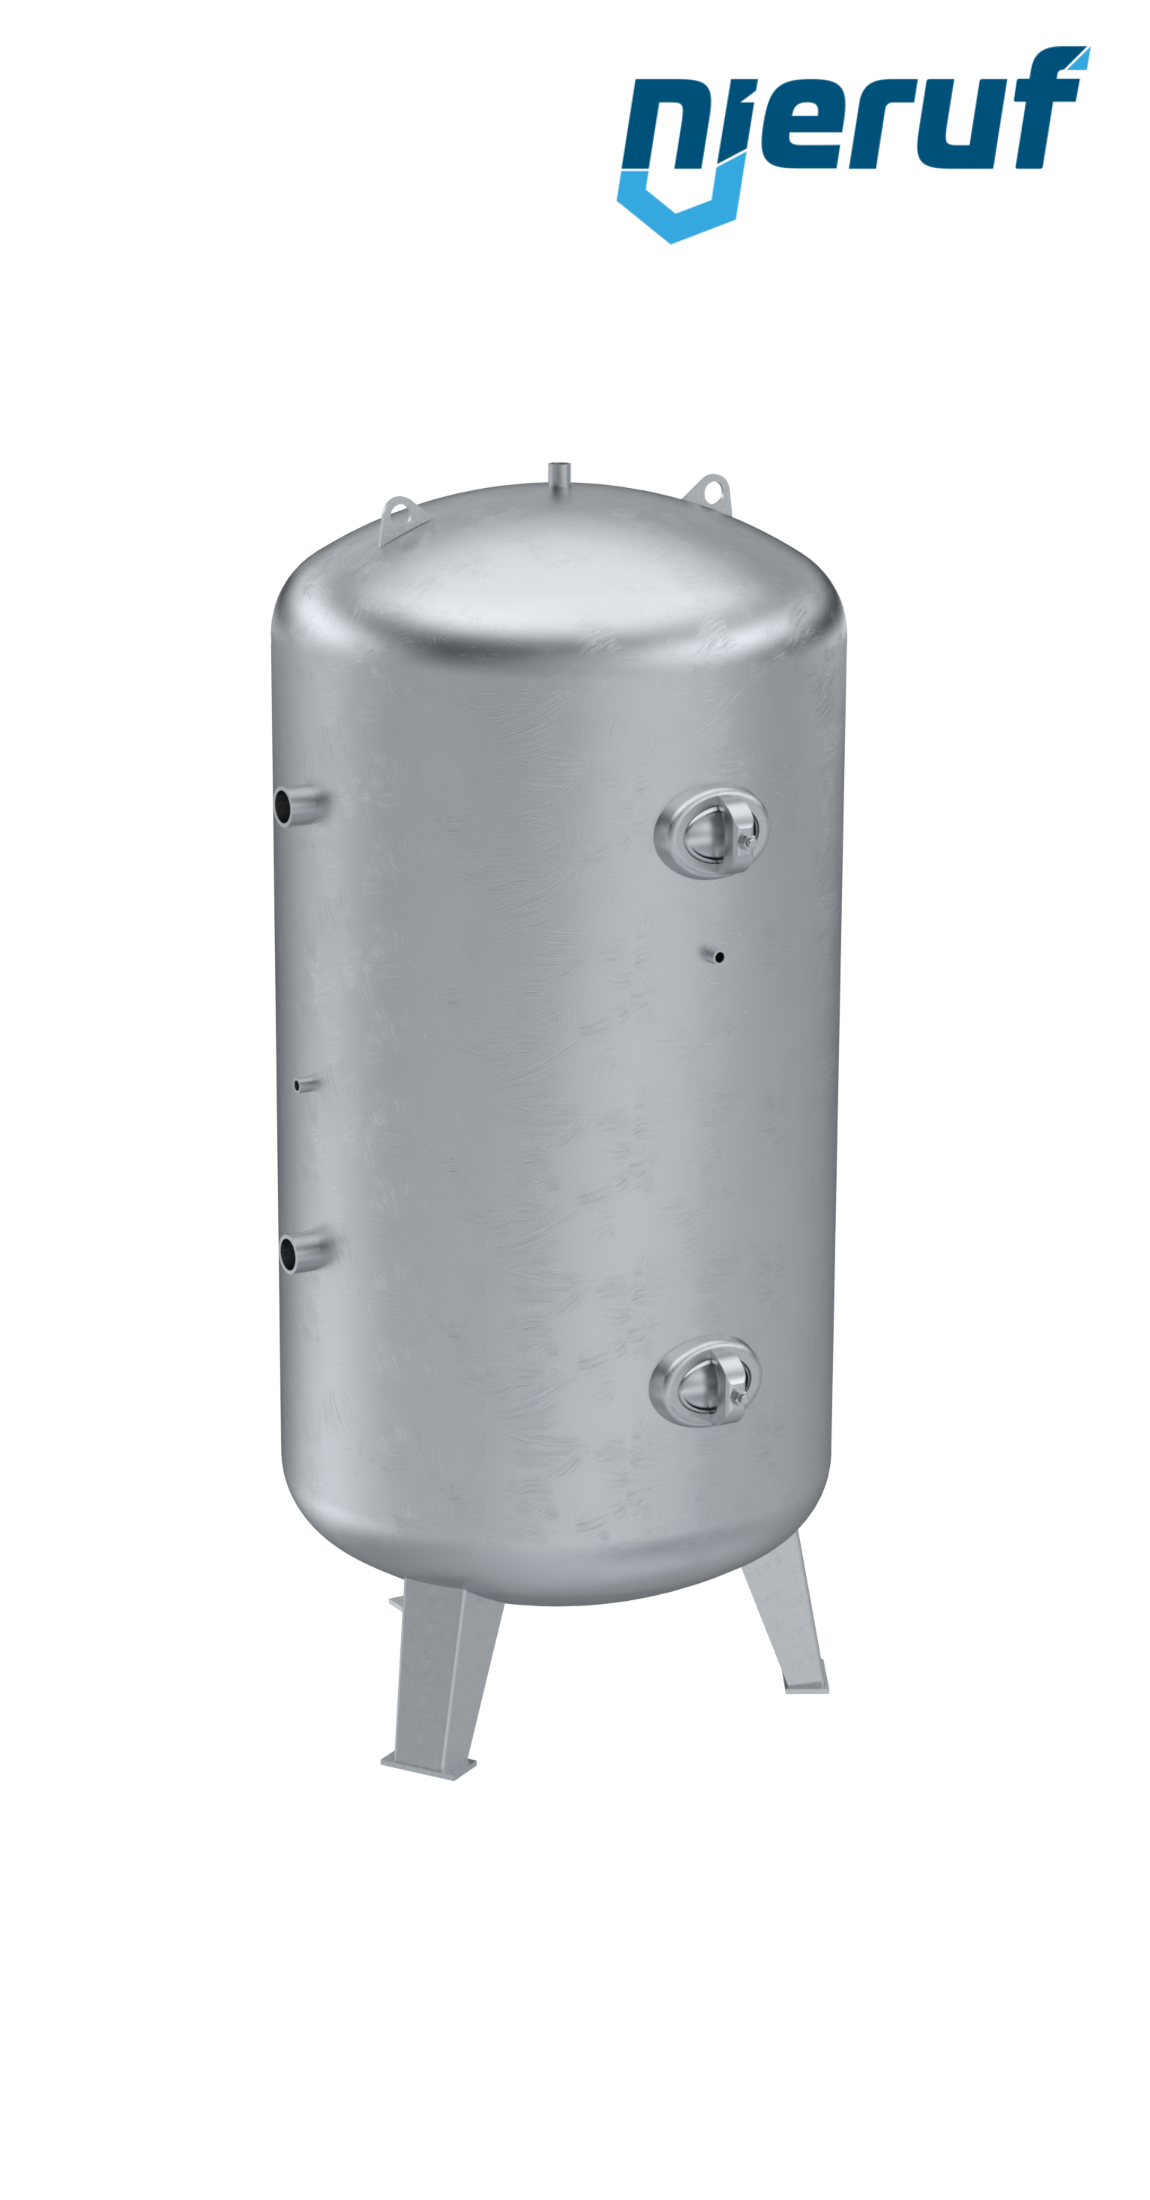 Serbatoio a pressione verticale BE01 5000 litri, 0-11 bar, acciaio primerizzato, diametro 1600 mm